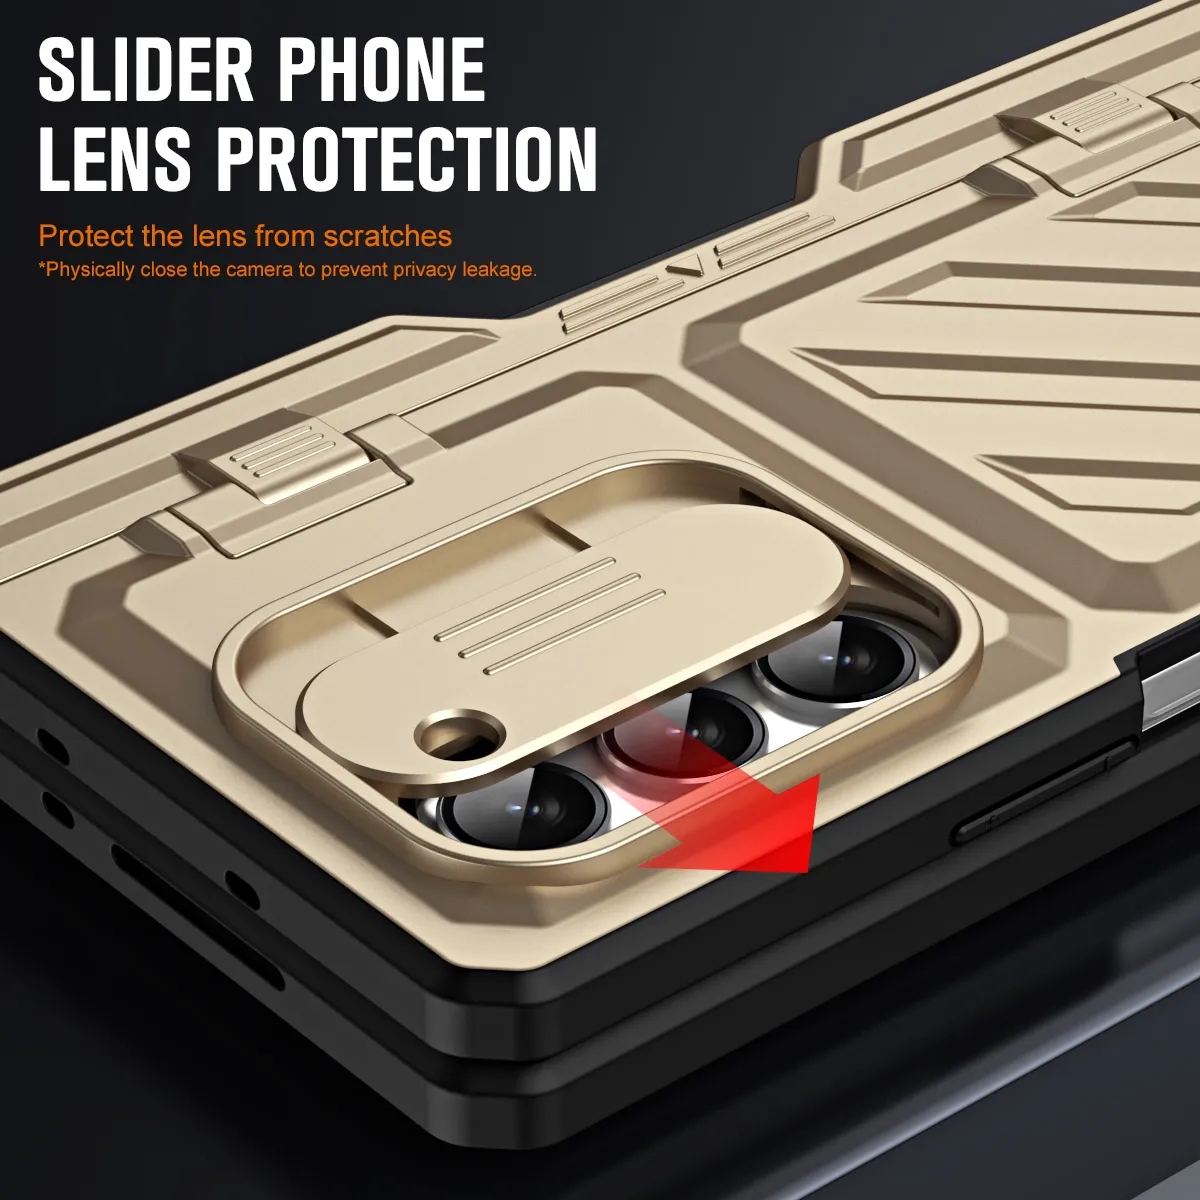 Luxus Tasche Magnet für Samsung Galaxy Z Fold 5 Fall Scharnier Rüstung stoßfest Fold 4 mit S Pen Halter Kickstand 360 volle Schutz Abdeckung